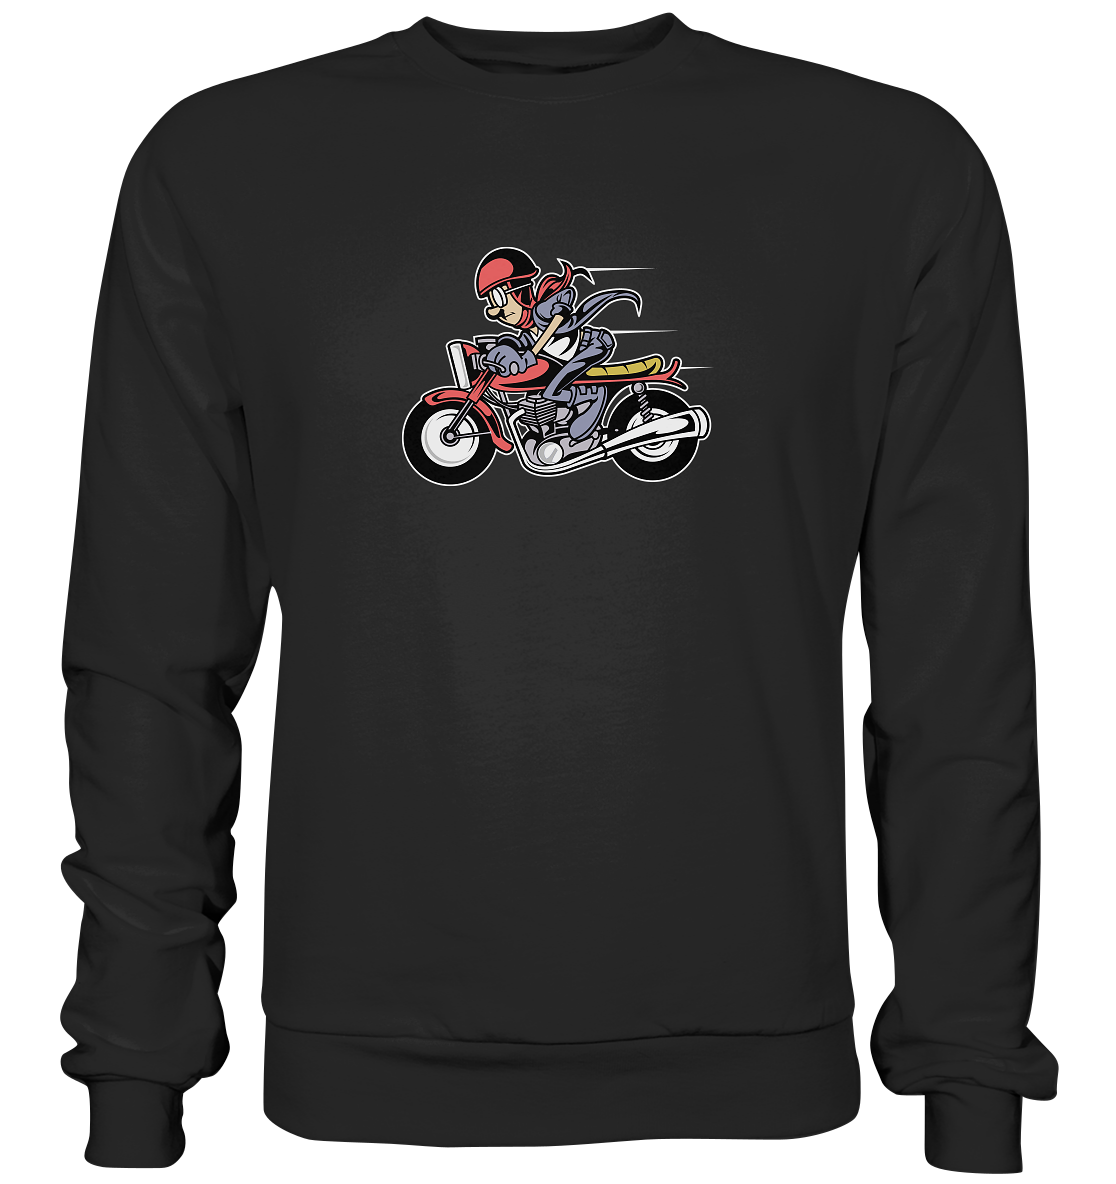 Motorrad - Sweatshirt comicbiker - Premium Sweatshirt